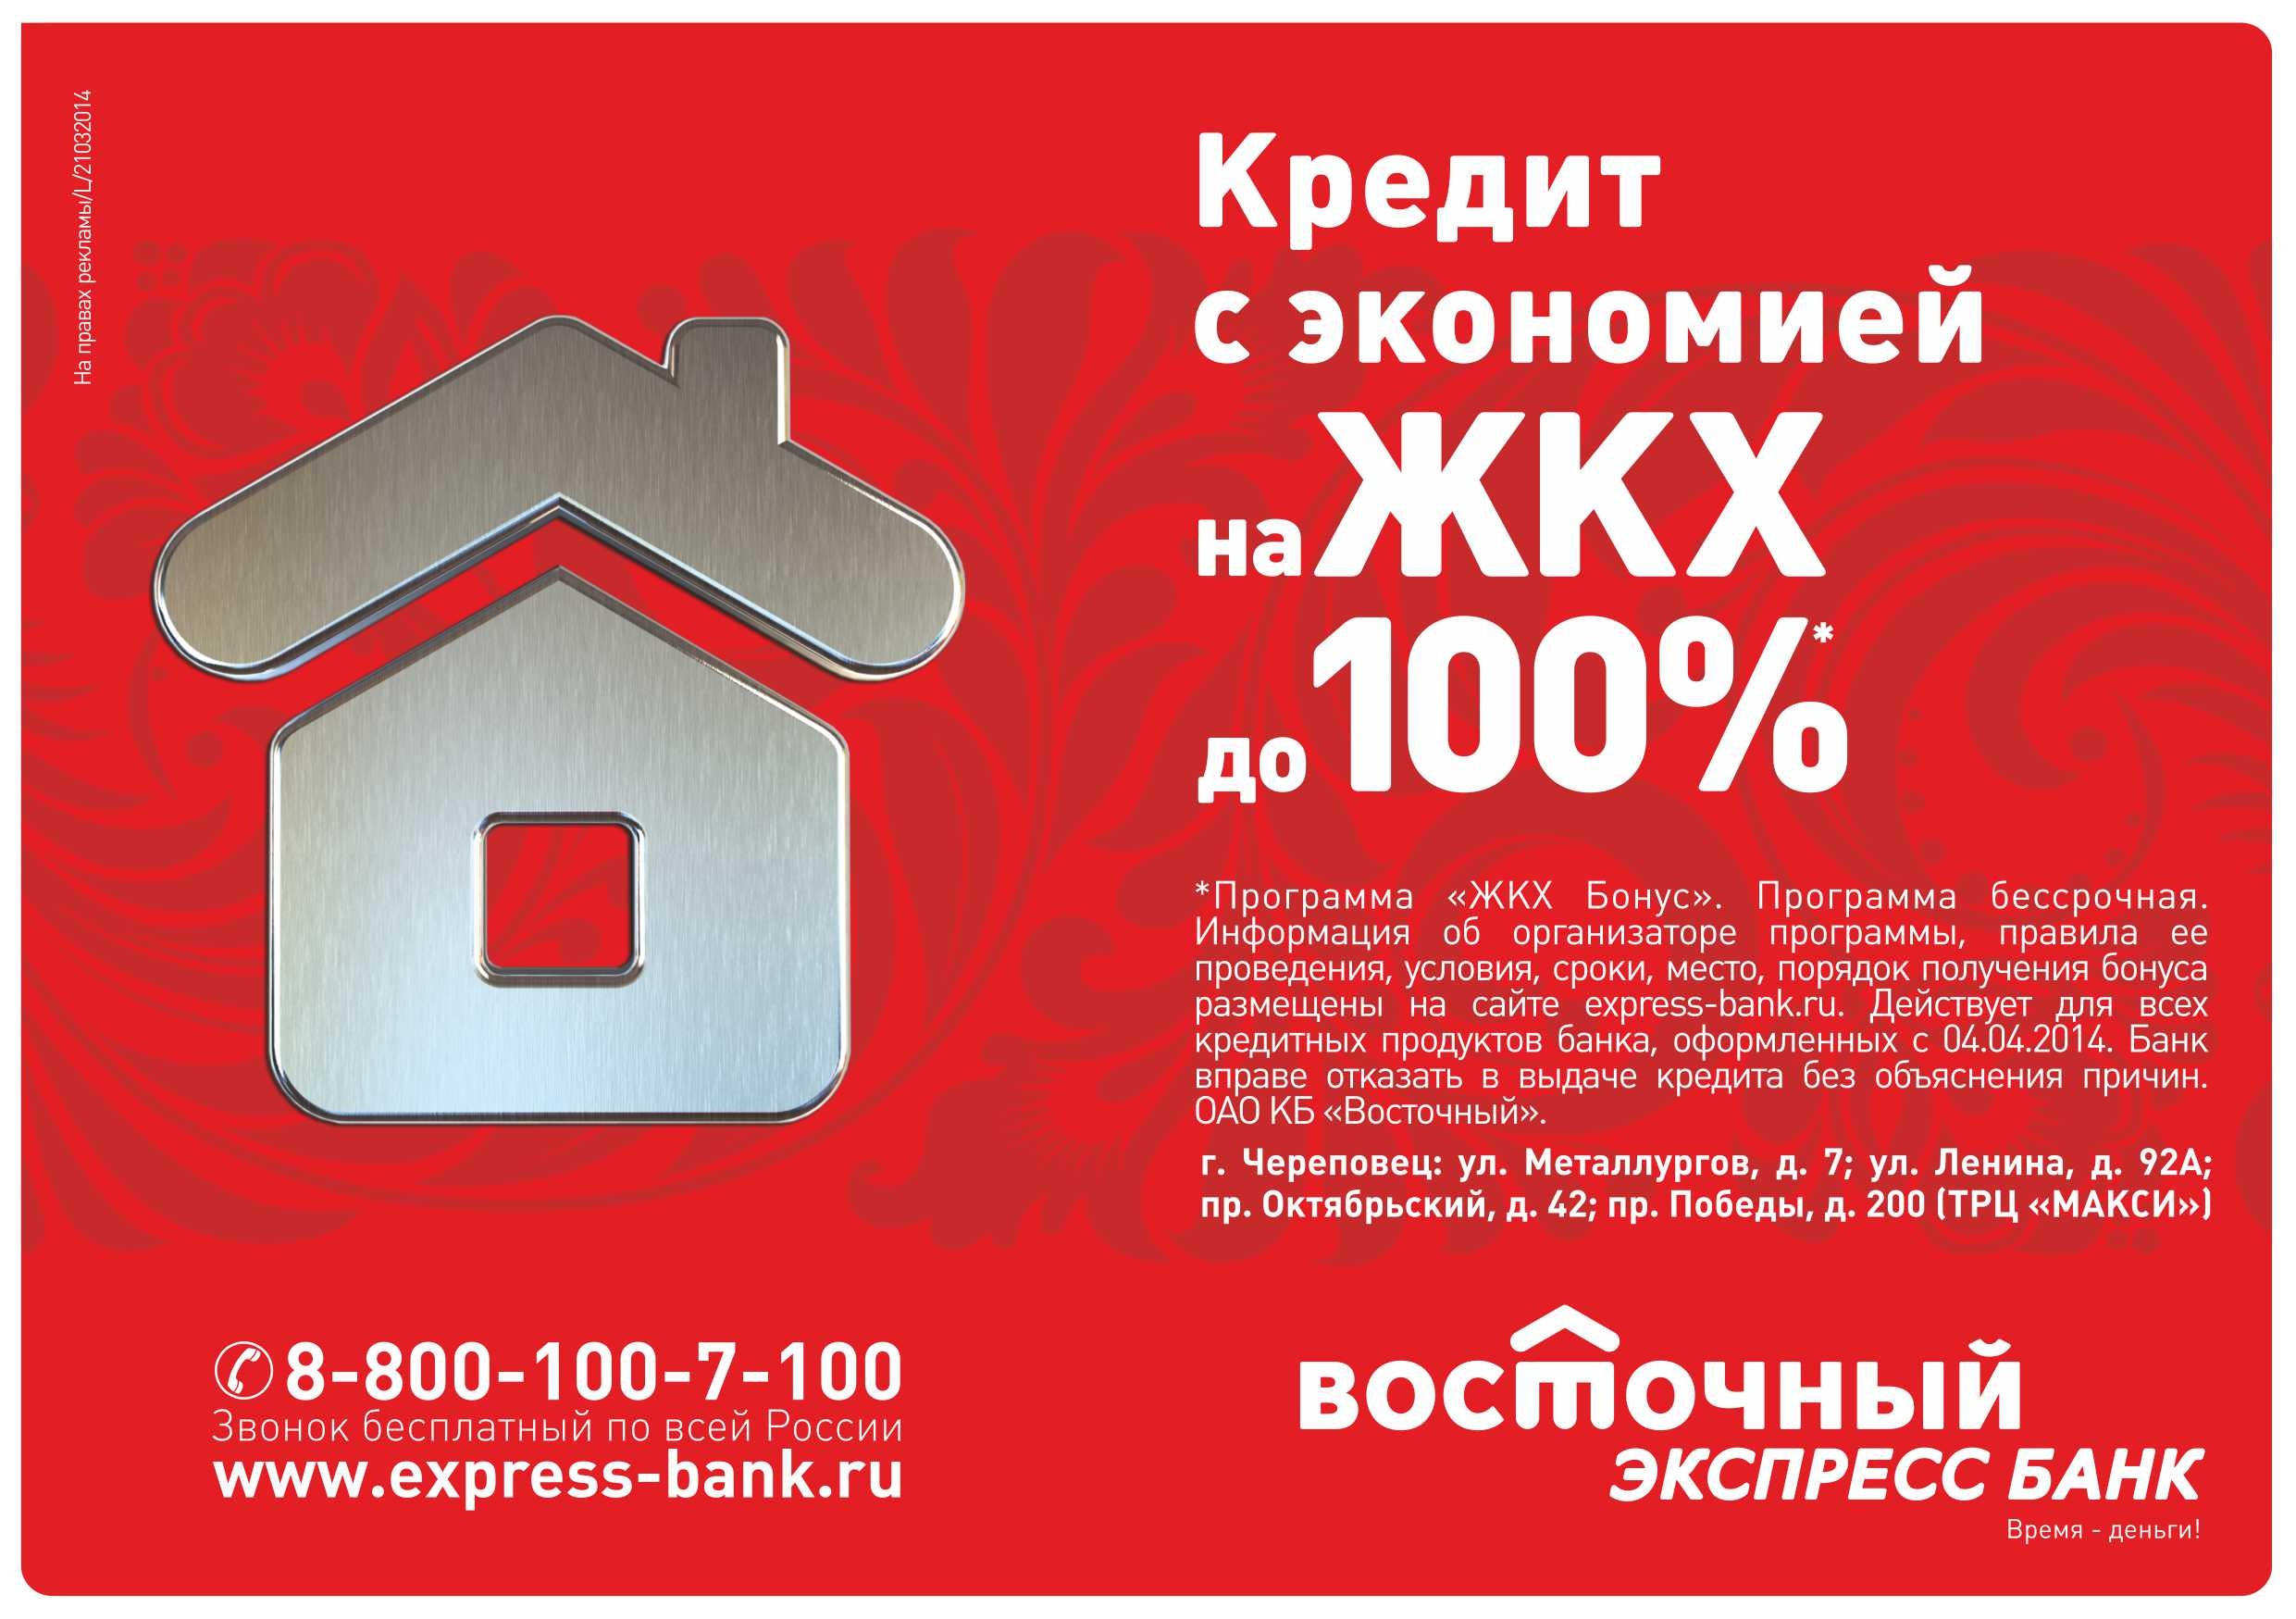 Кредитный экспресс банк